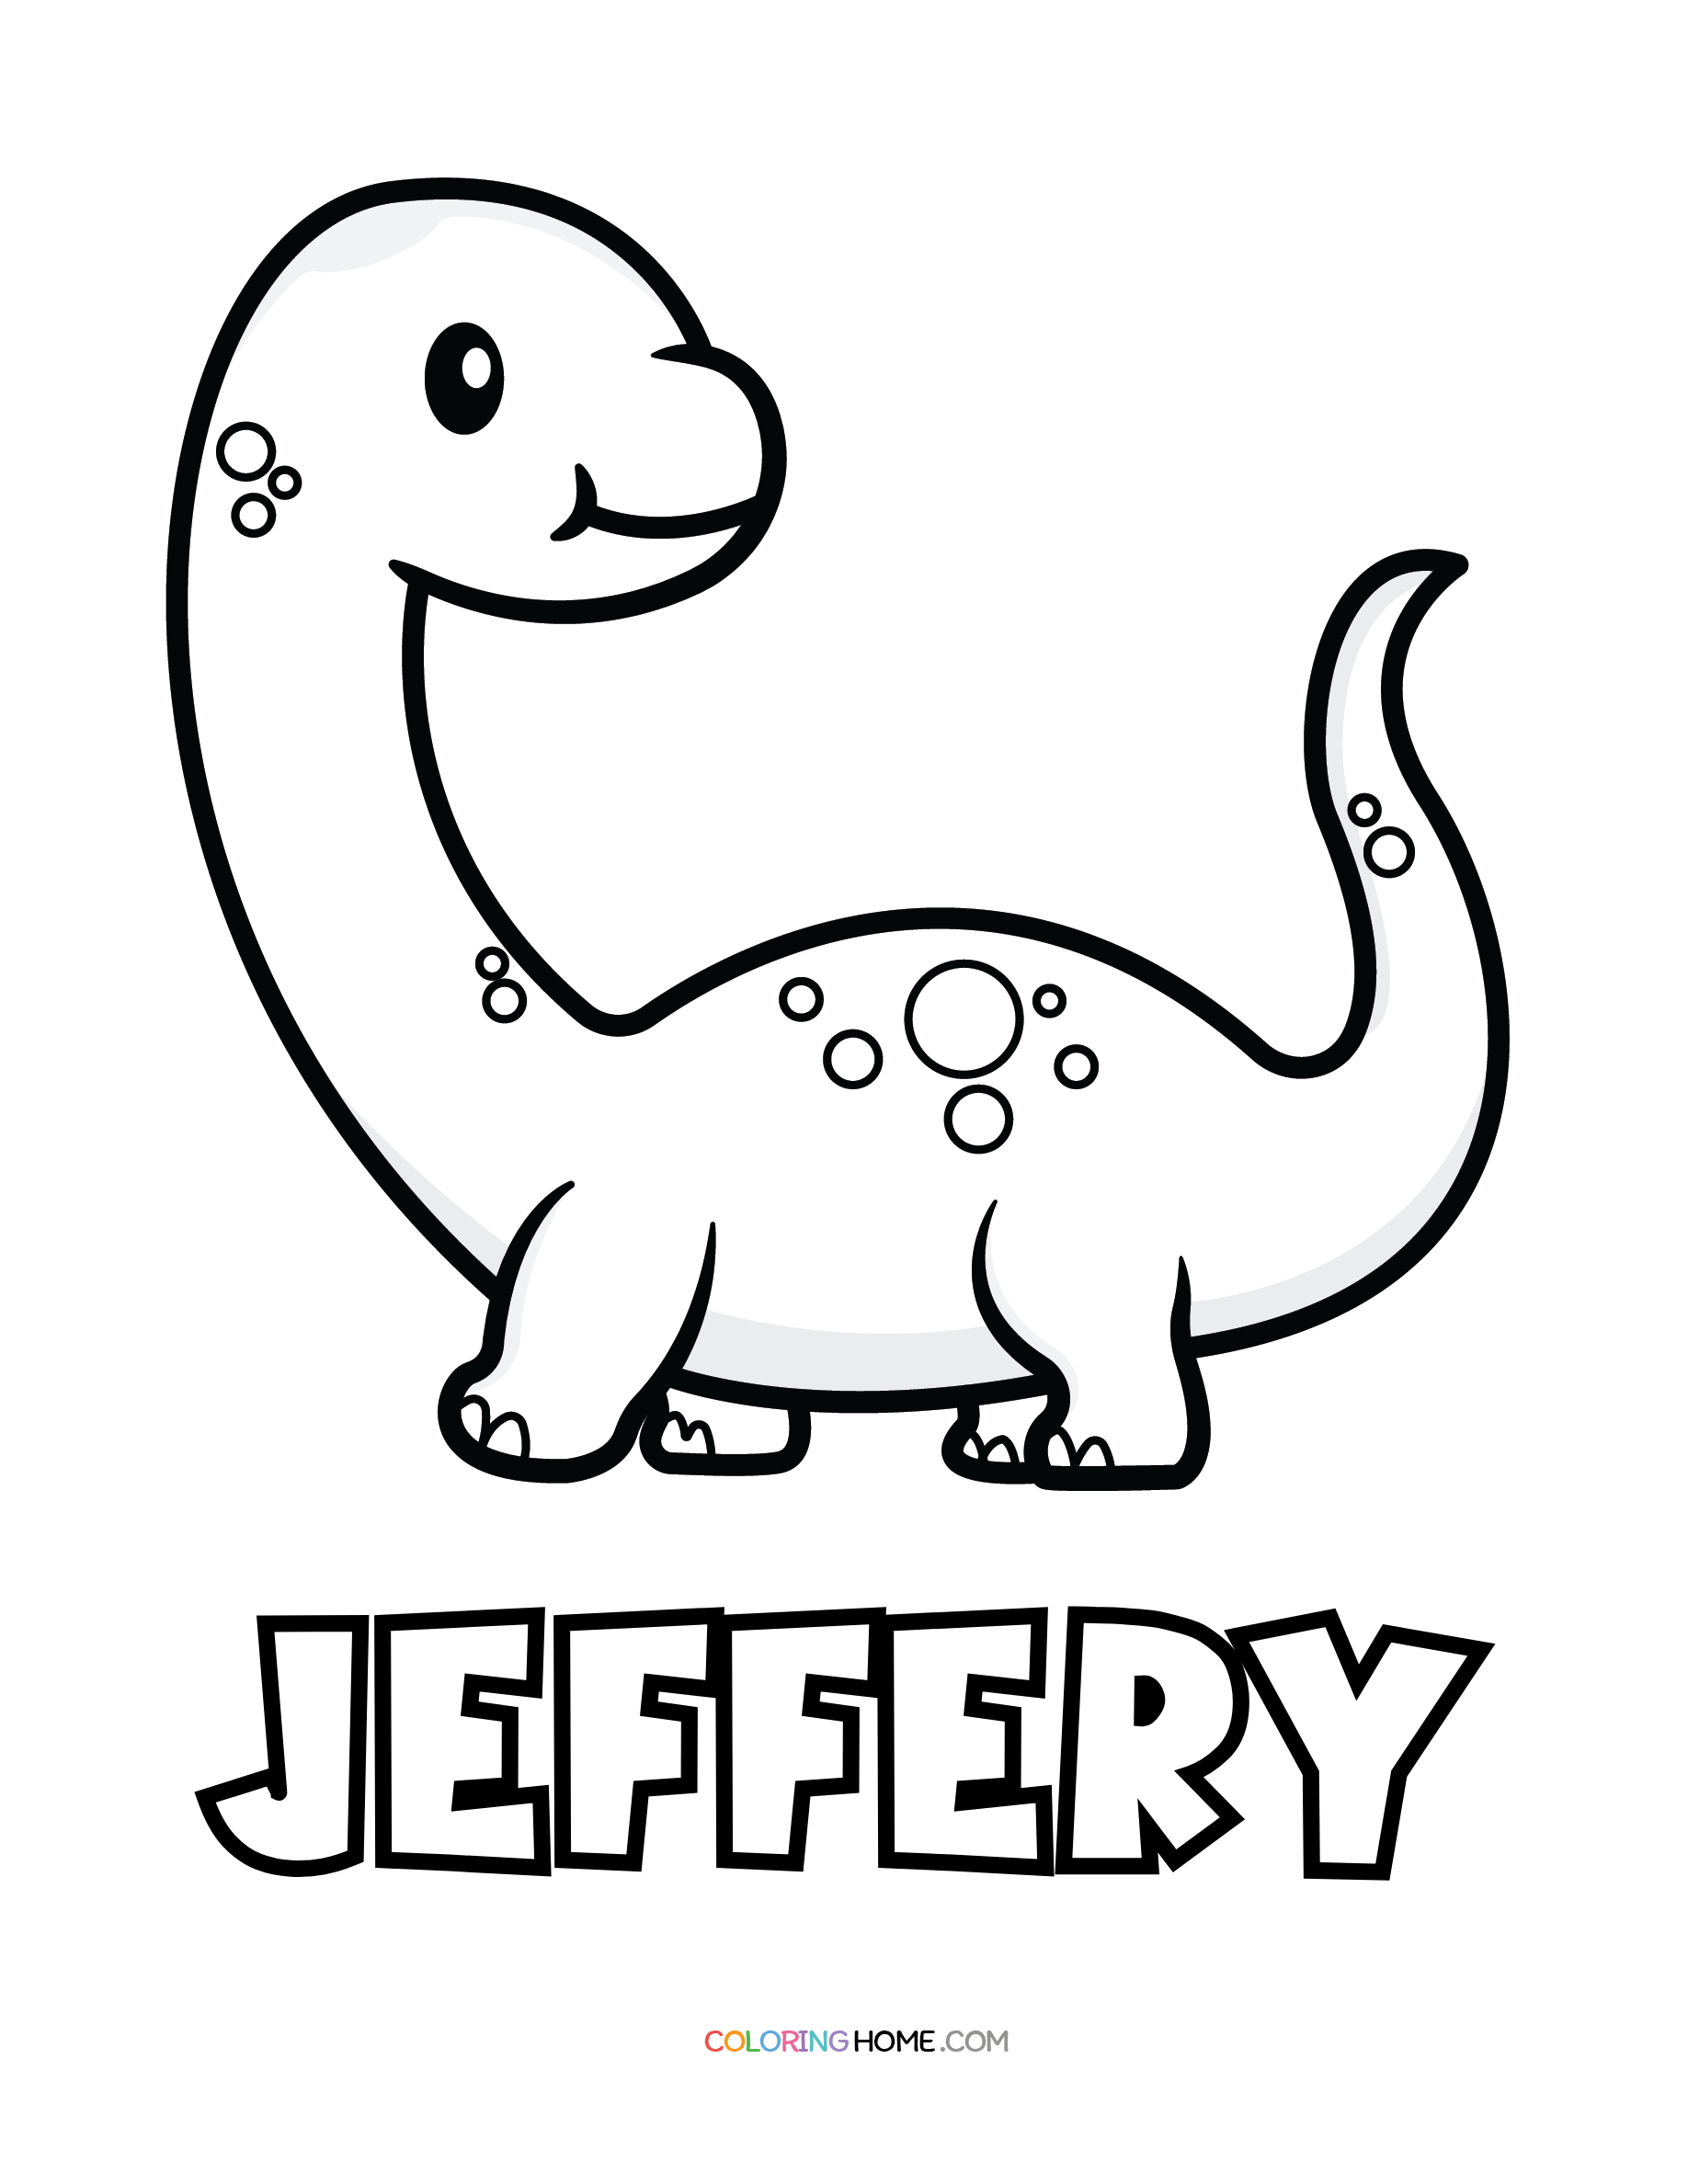 Jeffery dinosaur coloring page